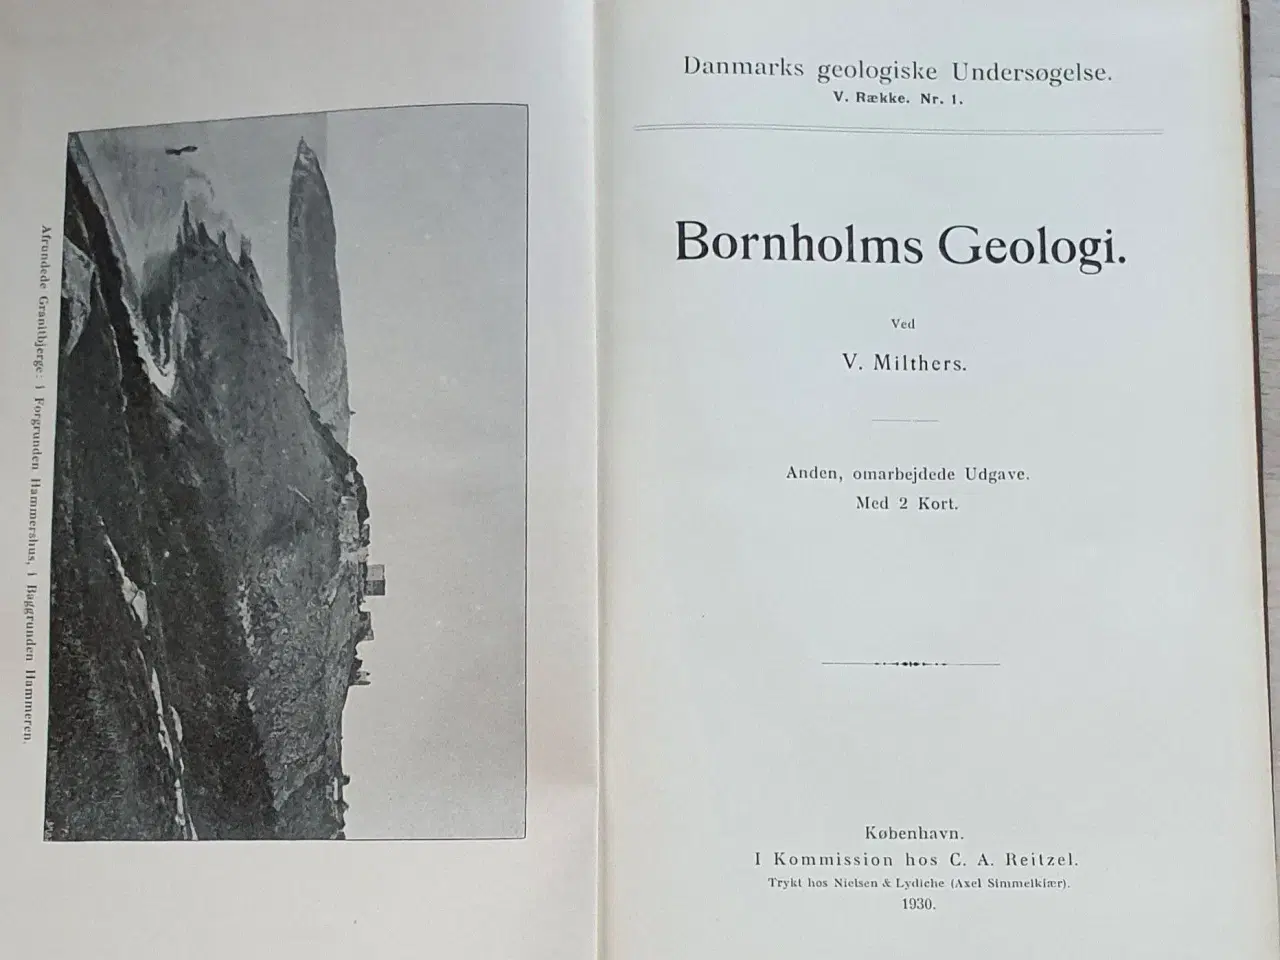 Billede 1 - Bornholms geolologi